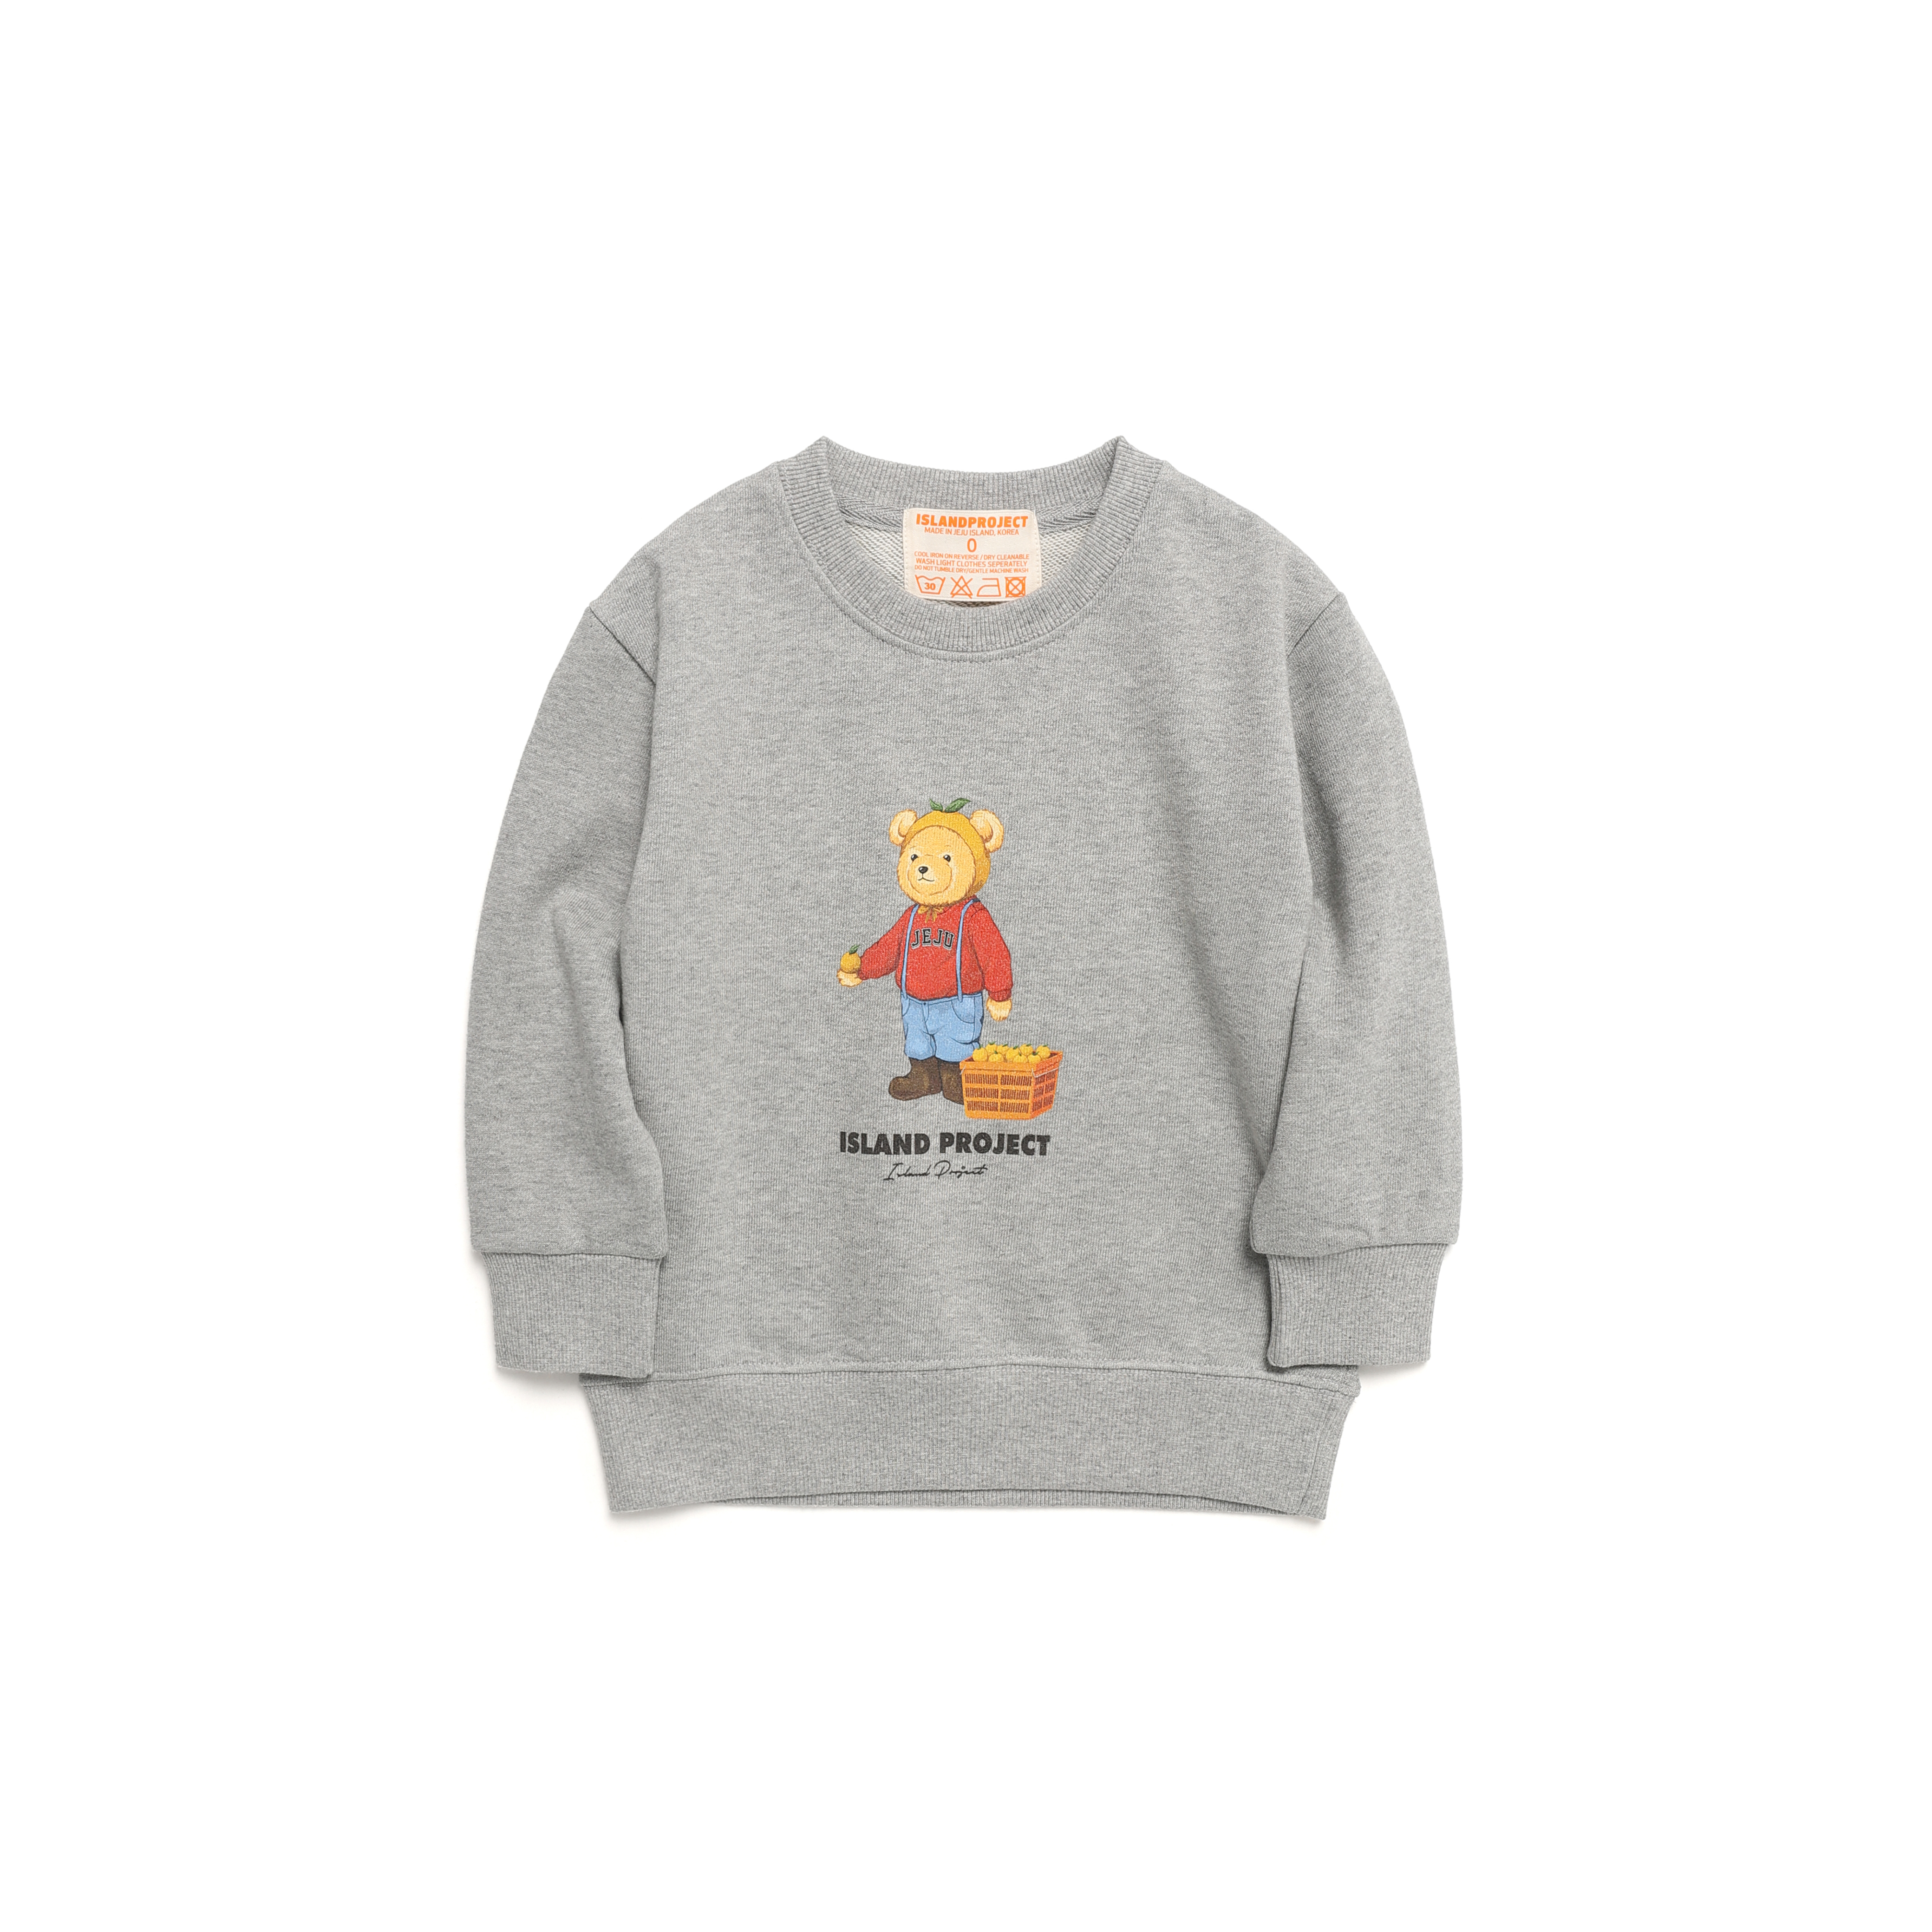 Mandarine Bear Sweatshirt - Gray (Baby)